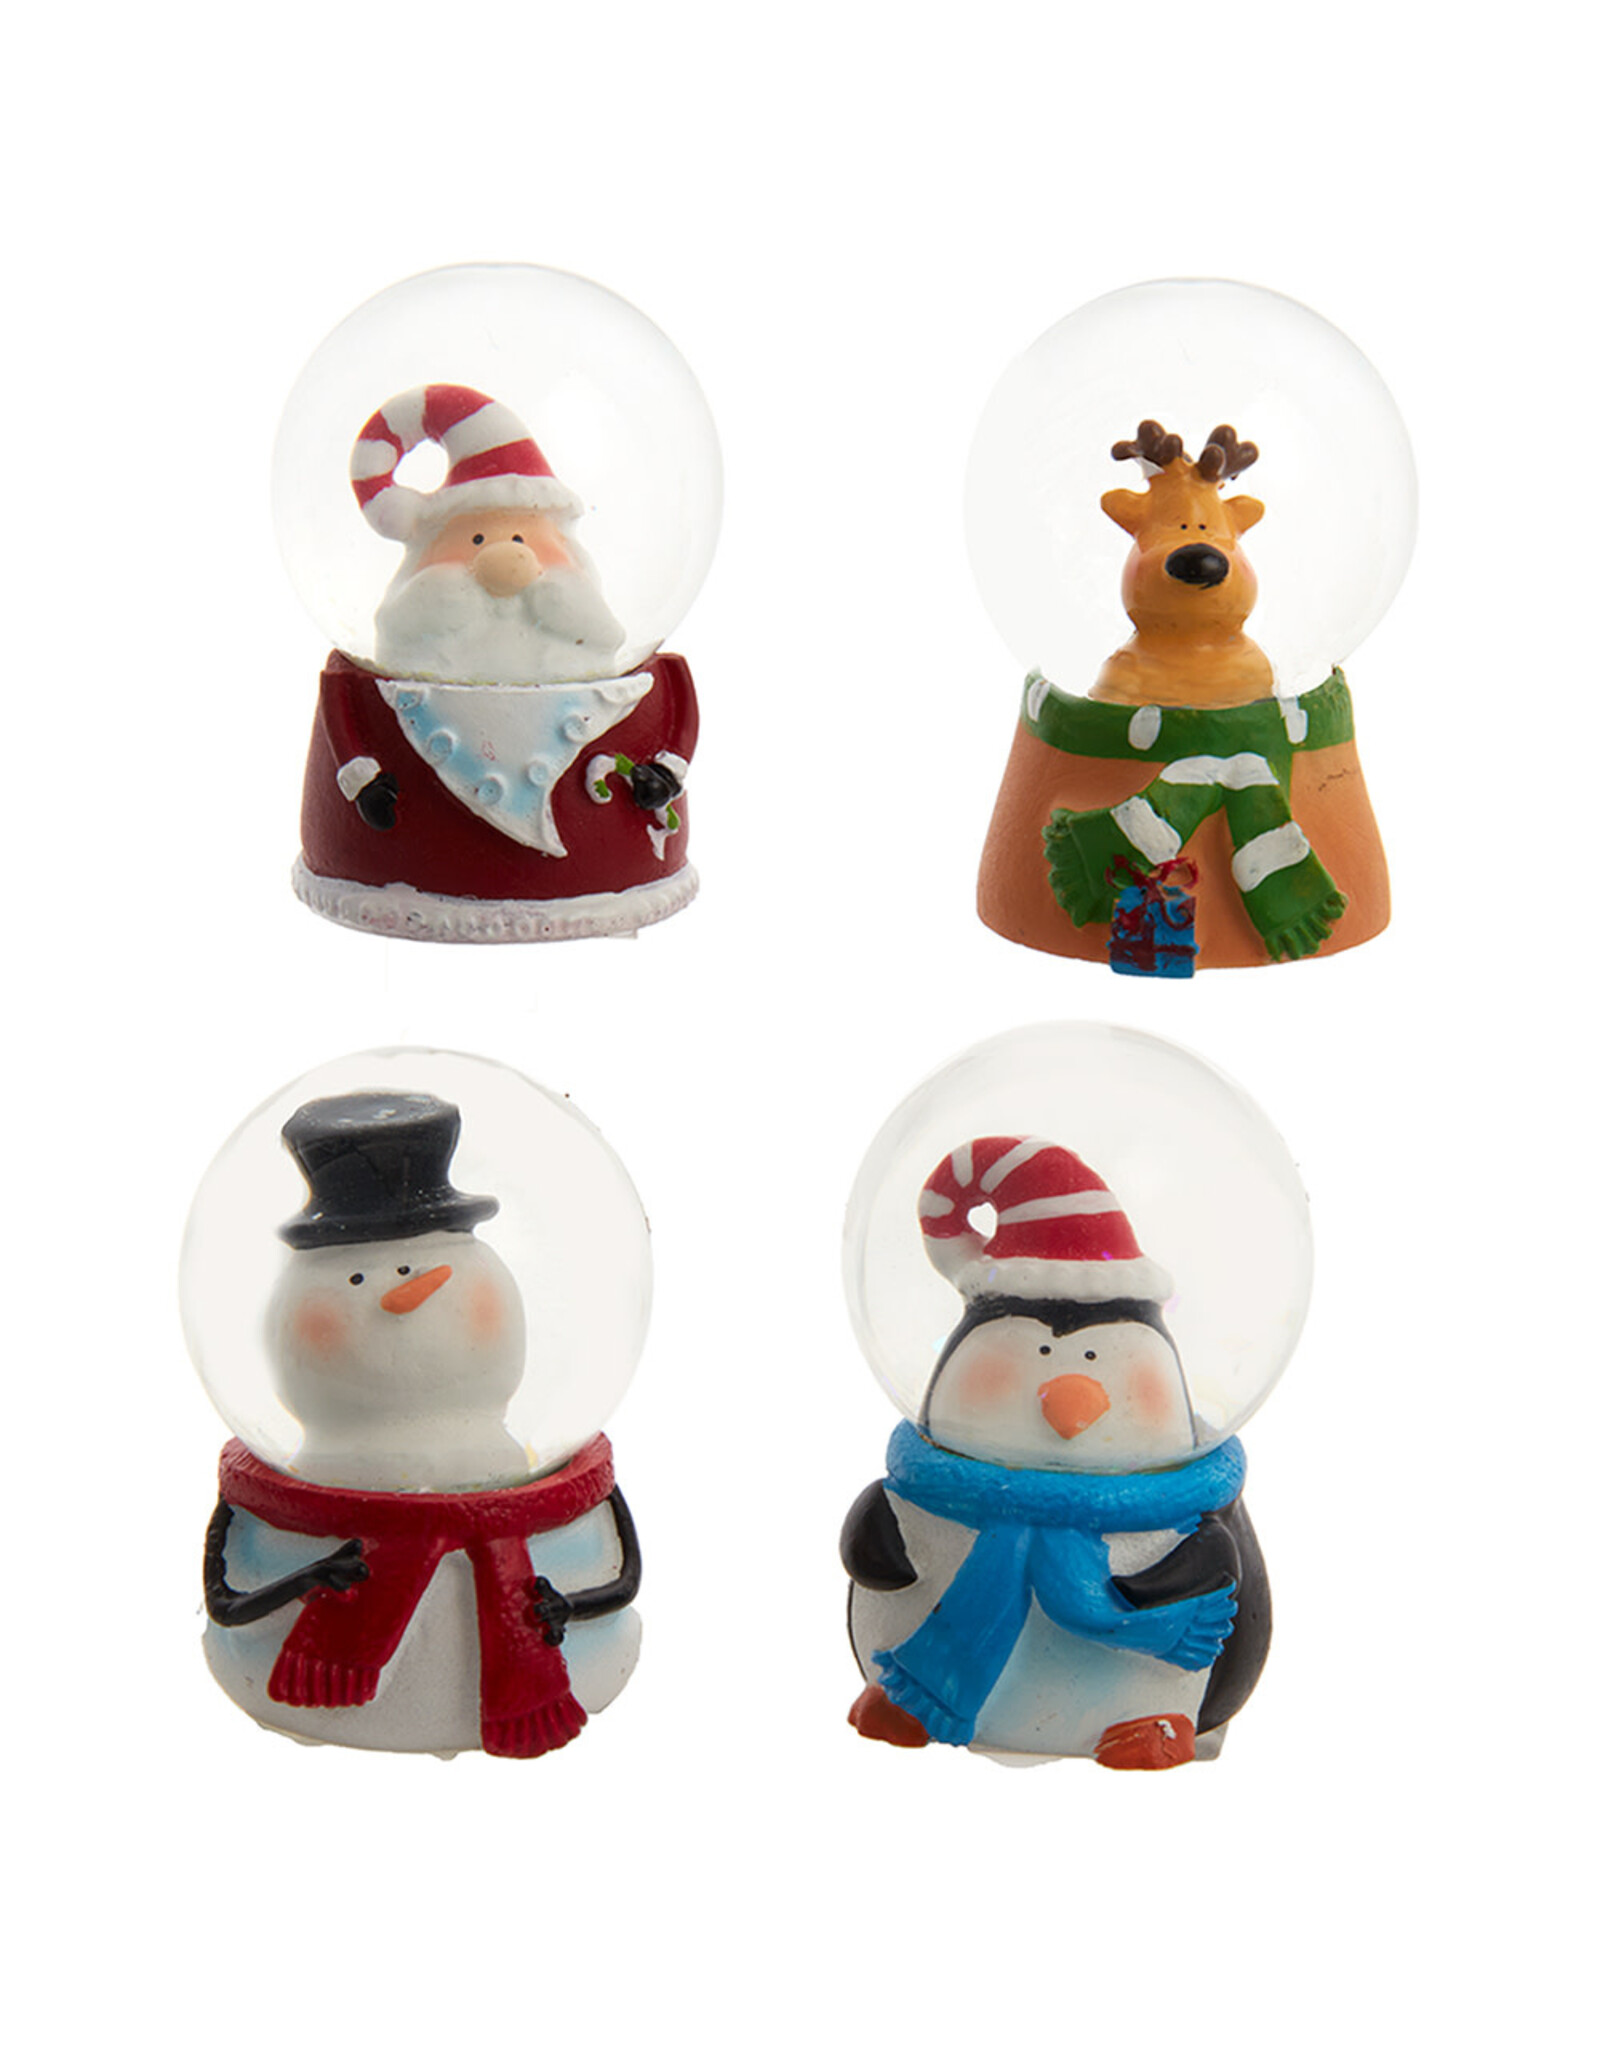 Kurt Adler Snow Globes 45mm 4 Asst Christmas Character Water Globes